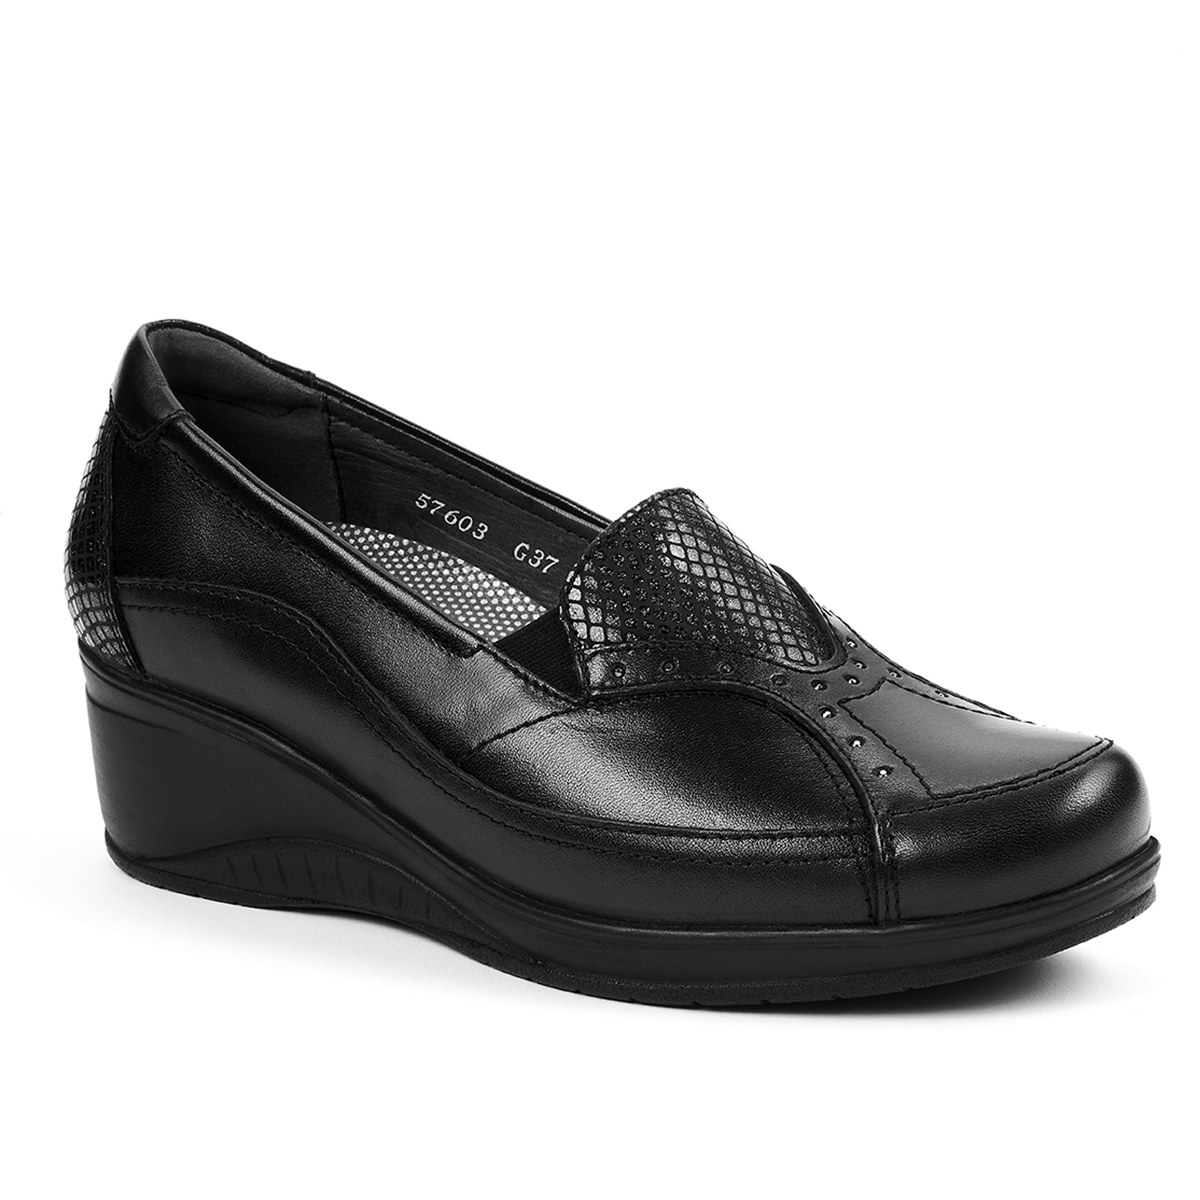 Forelli - Forelli ROSA-G Comfort Kadın Ayakkabı Siyah